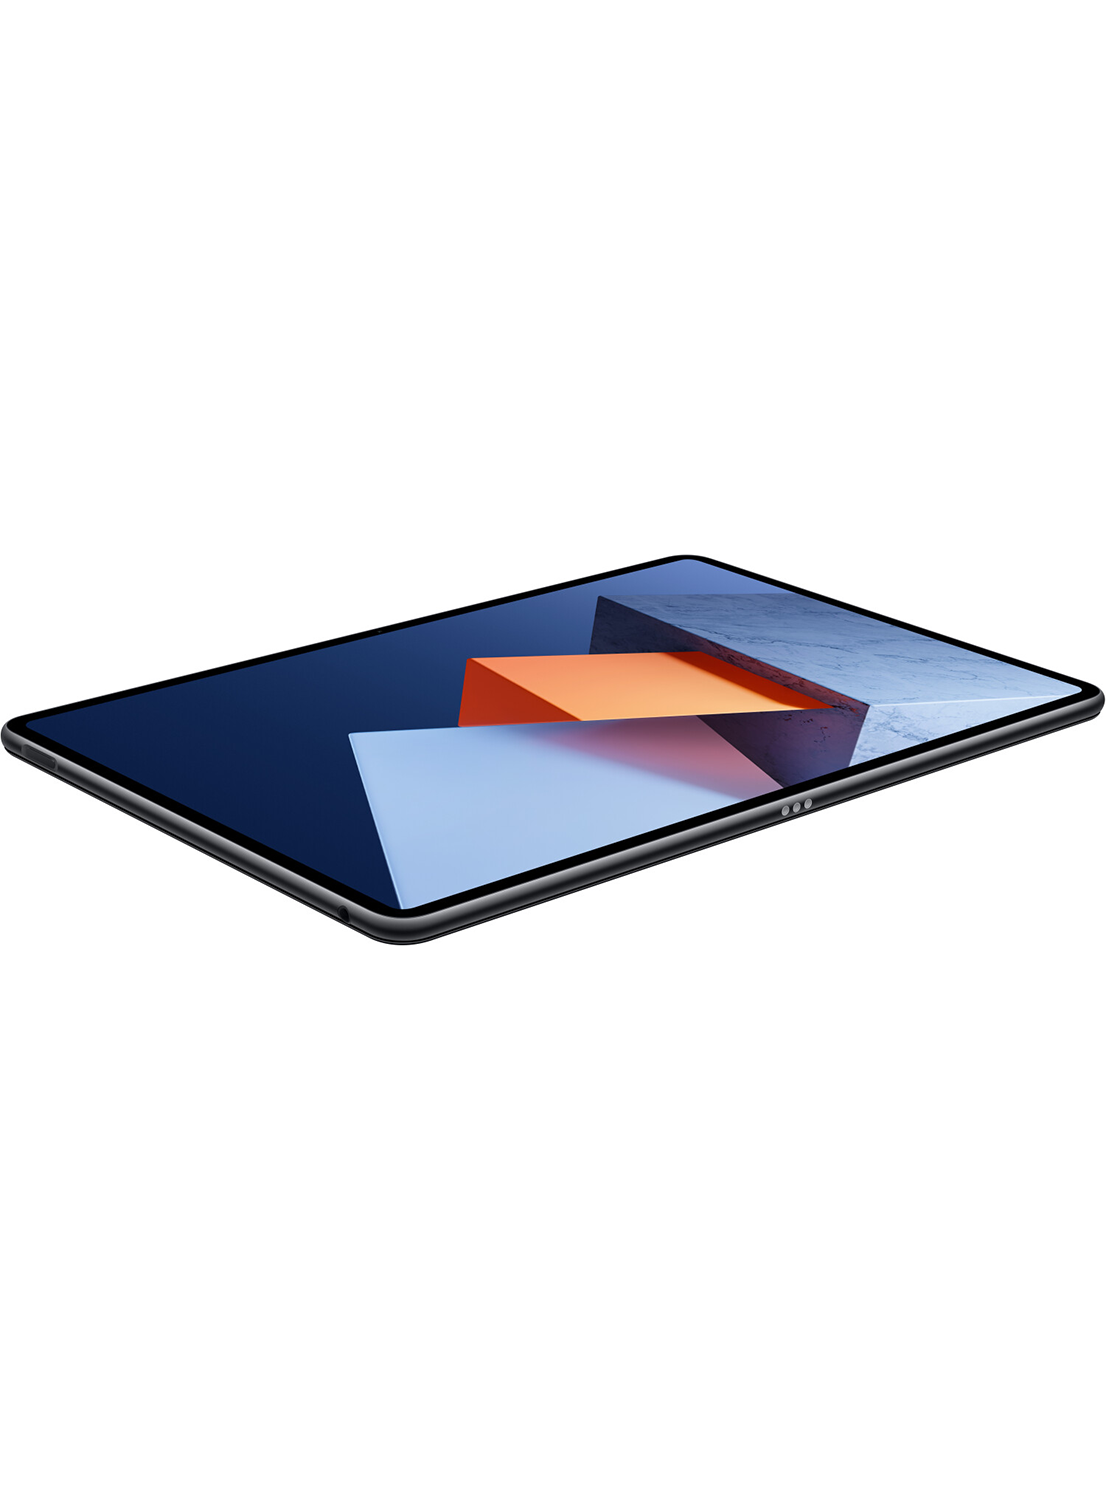 Huawei Matebook E (2022) i3-1110G4